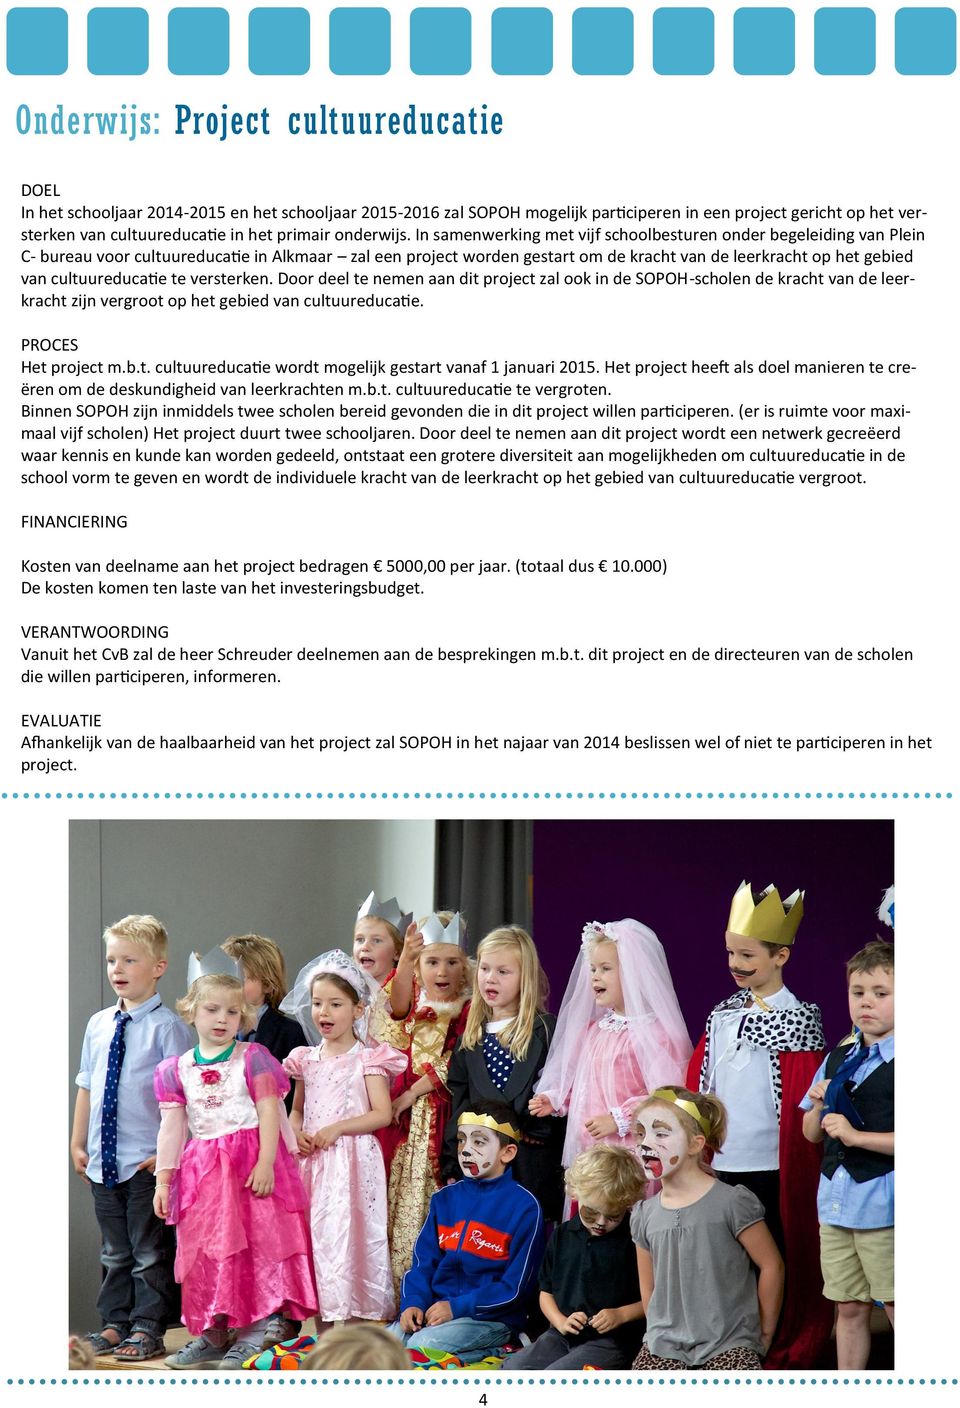 In samenwerking met vijf schoolbesturen onder begeleiding van Plein C- bureau voor cultuureducatie in Alkmaar zal een project worden gestart om de kracht van de leerkracht op het gebied van